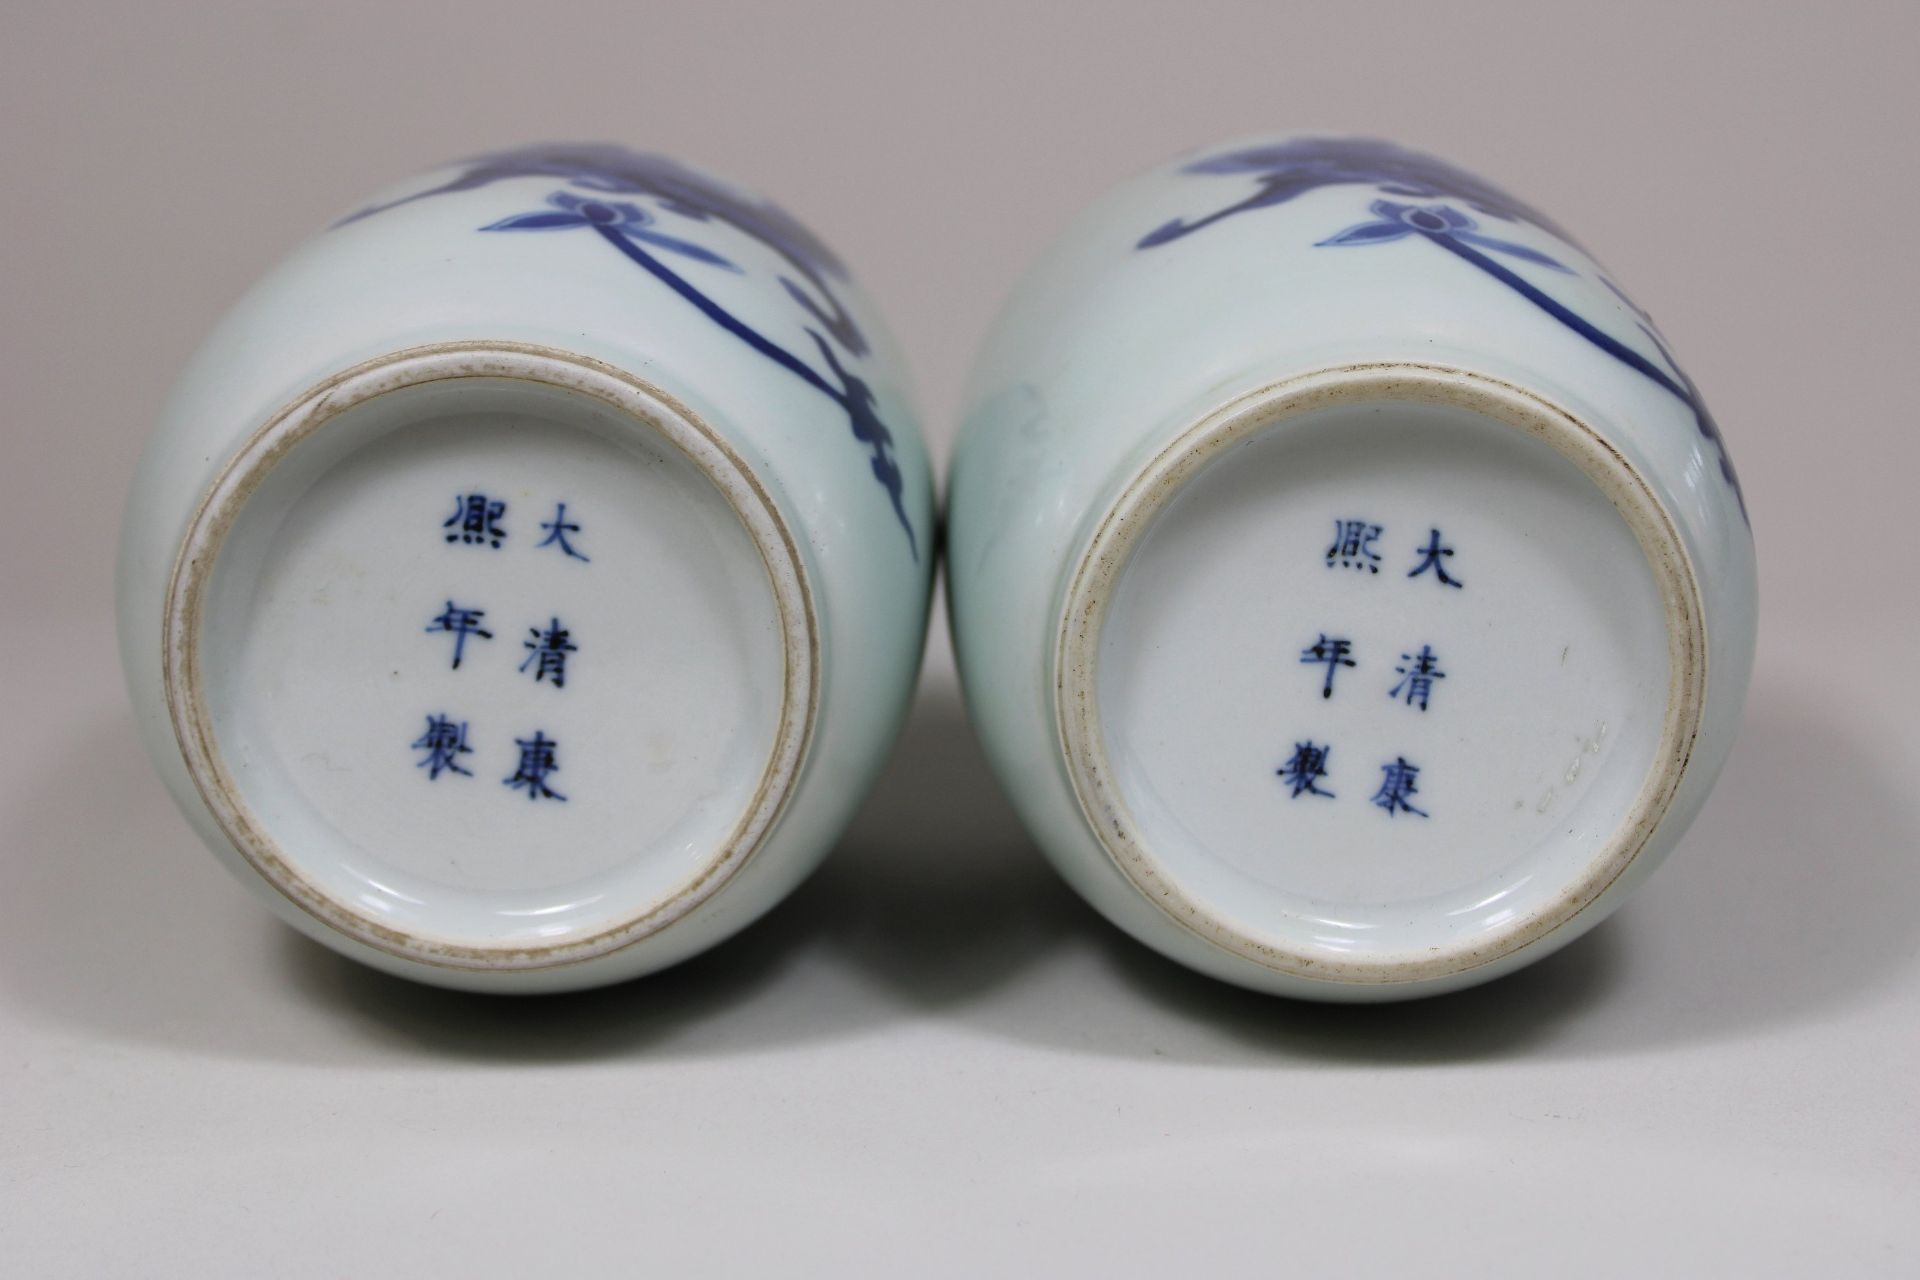 Paar Vasen, China, 19. Jh., Porzellan - Image 2 of 3